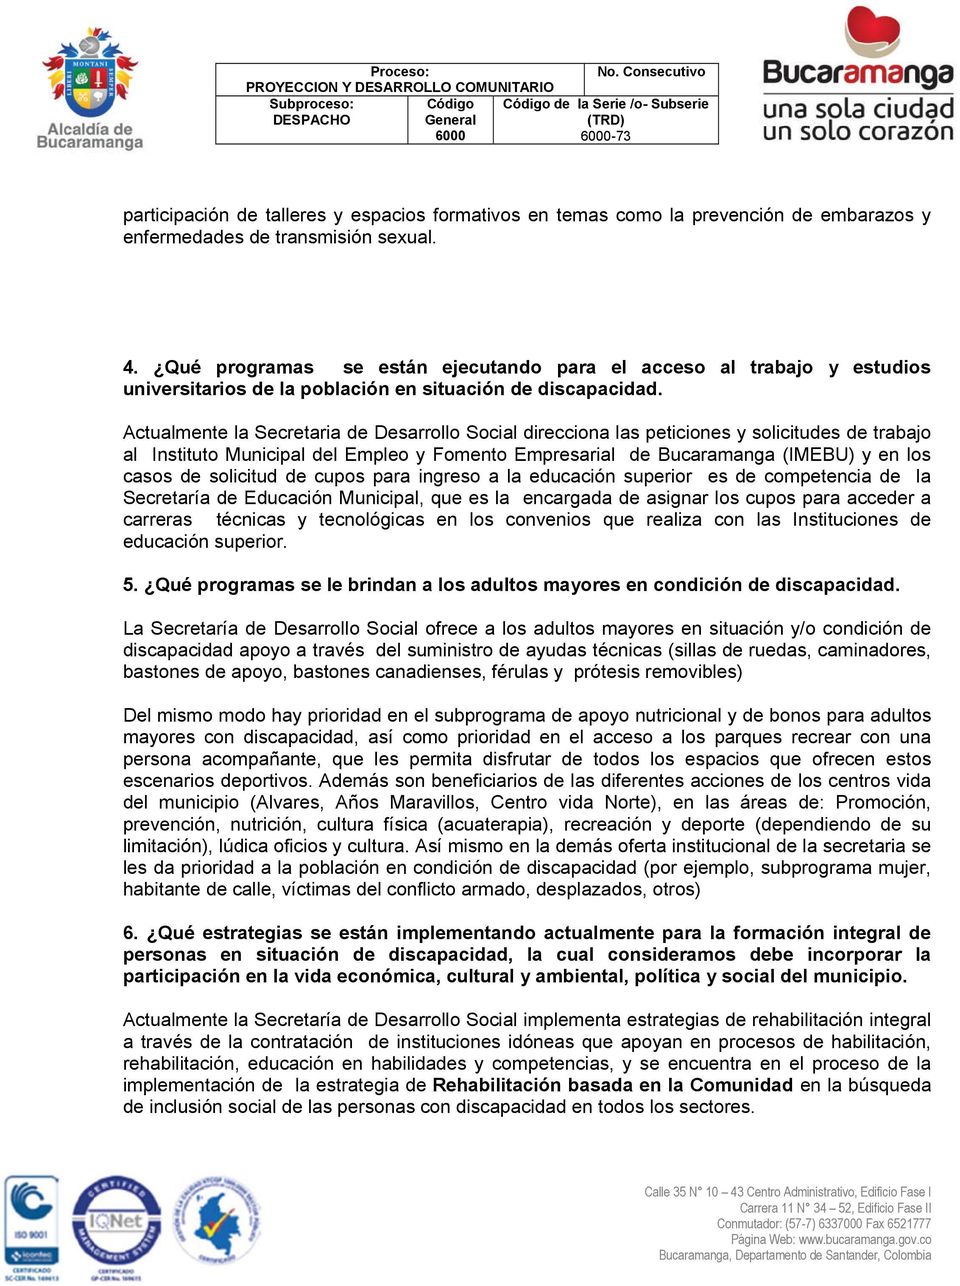 Actualmente la Secretaria de Desarrollo Social direcciona las peticiones y solicitudes de trabajo al Instituto Municipal del Empleo y Fomento Empresarial de Bucaramanga (IMEBU) y en los casos de